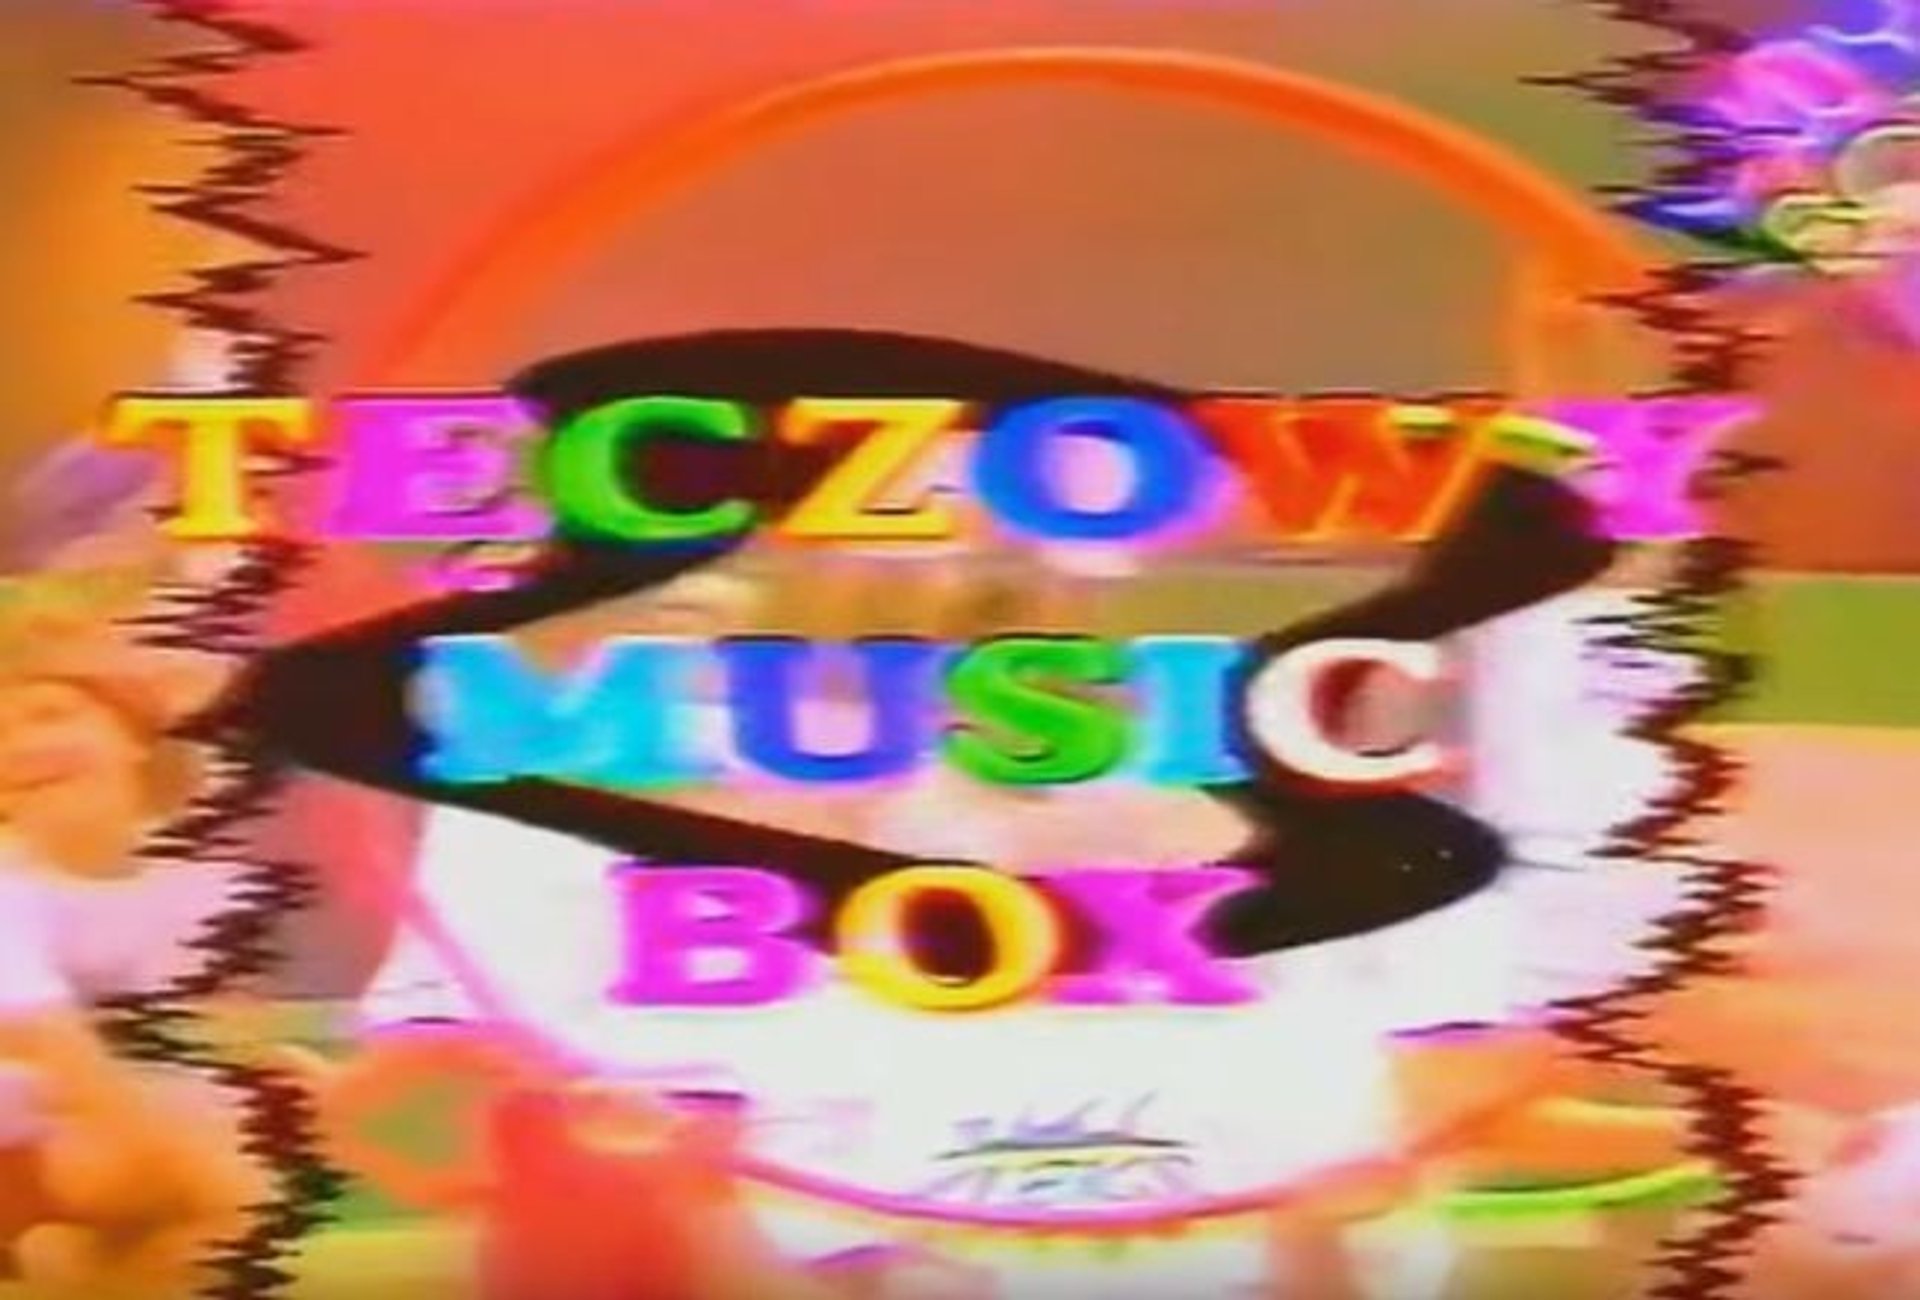 tęczowy music box